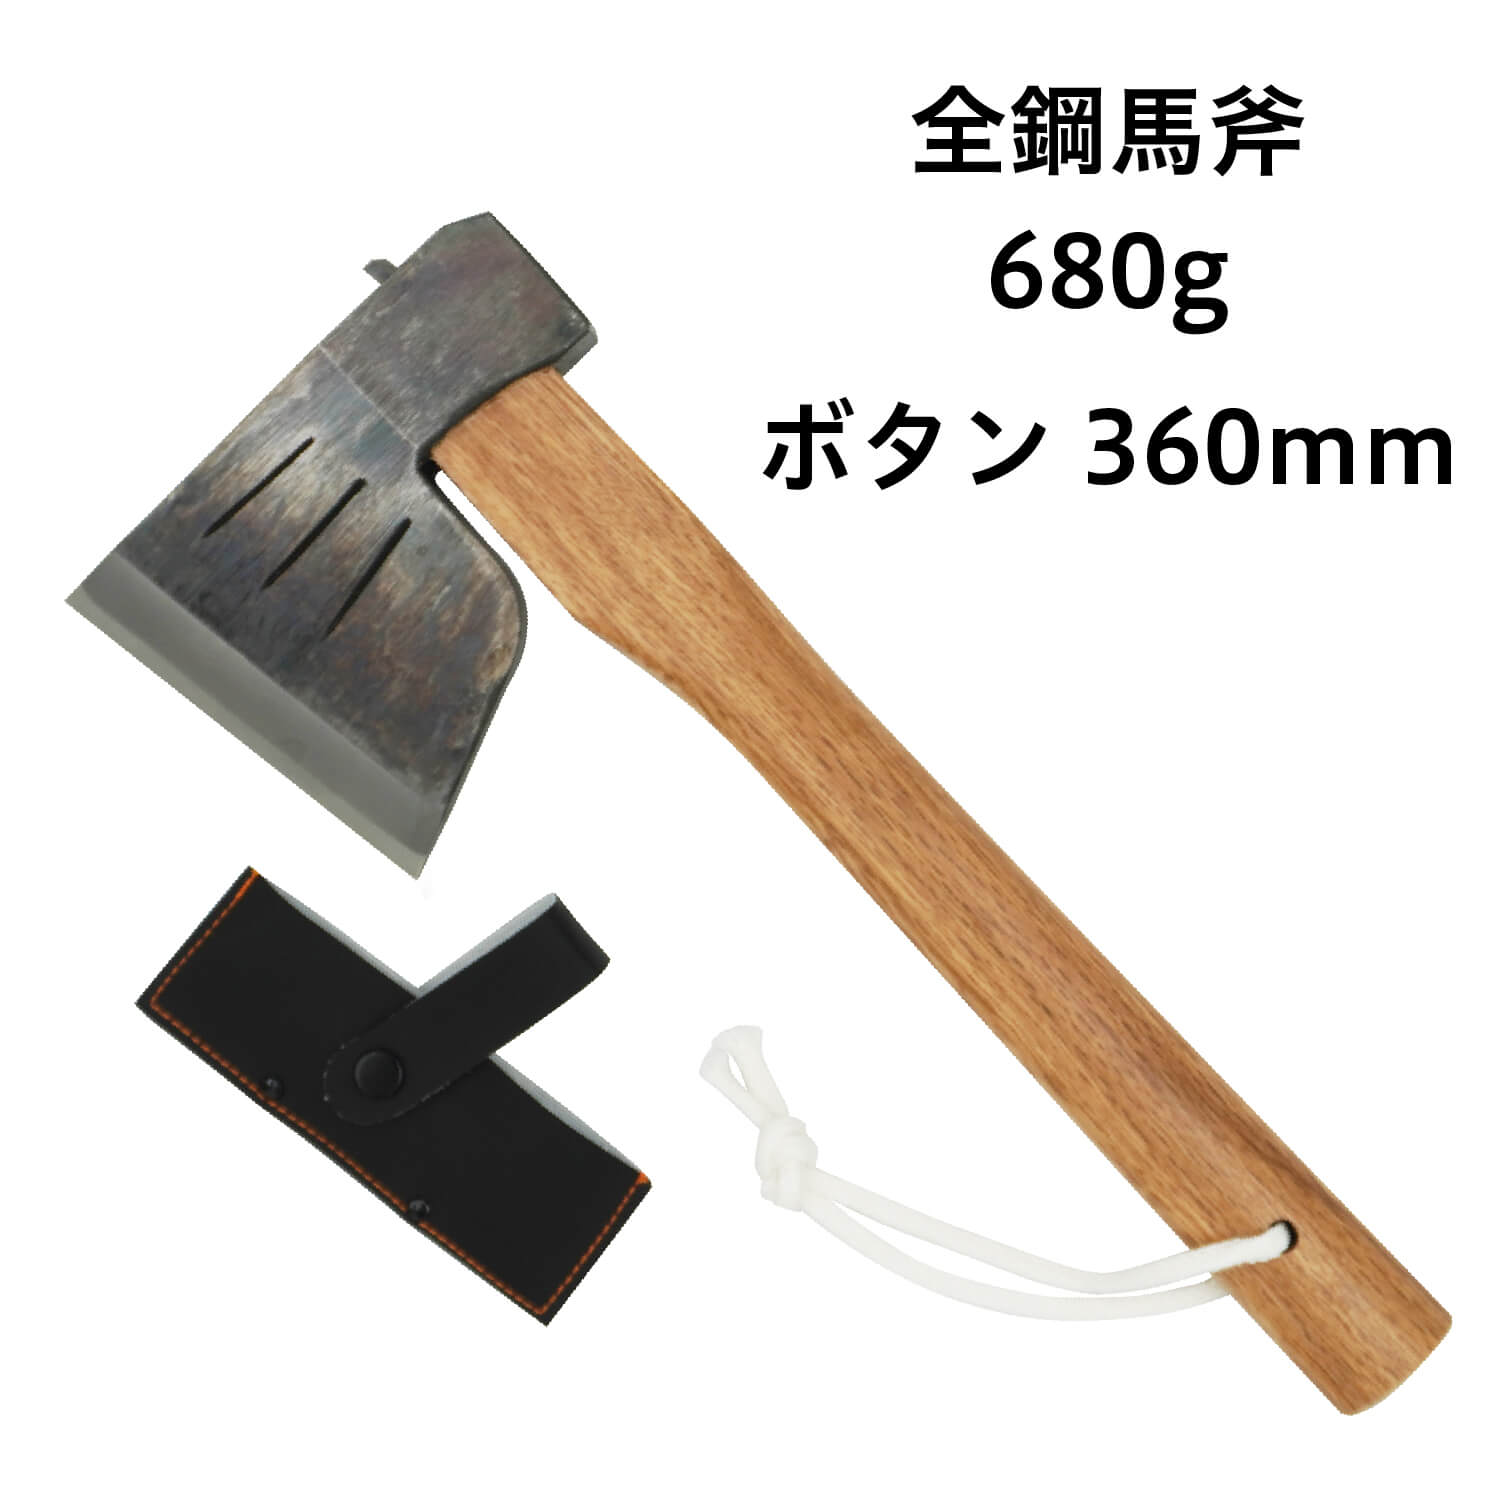 【楽天市場】【010-017】越後三条打刃物 水野製作所作全鋼馬斧